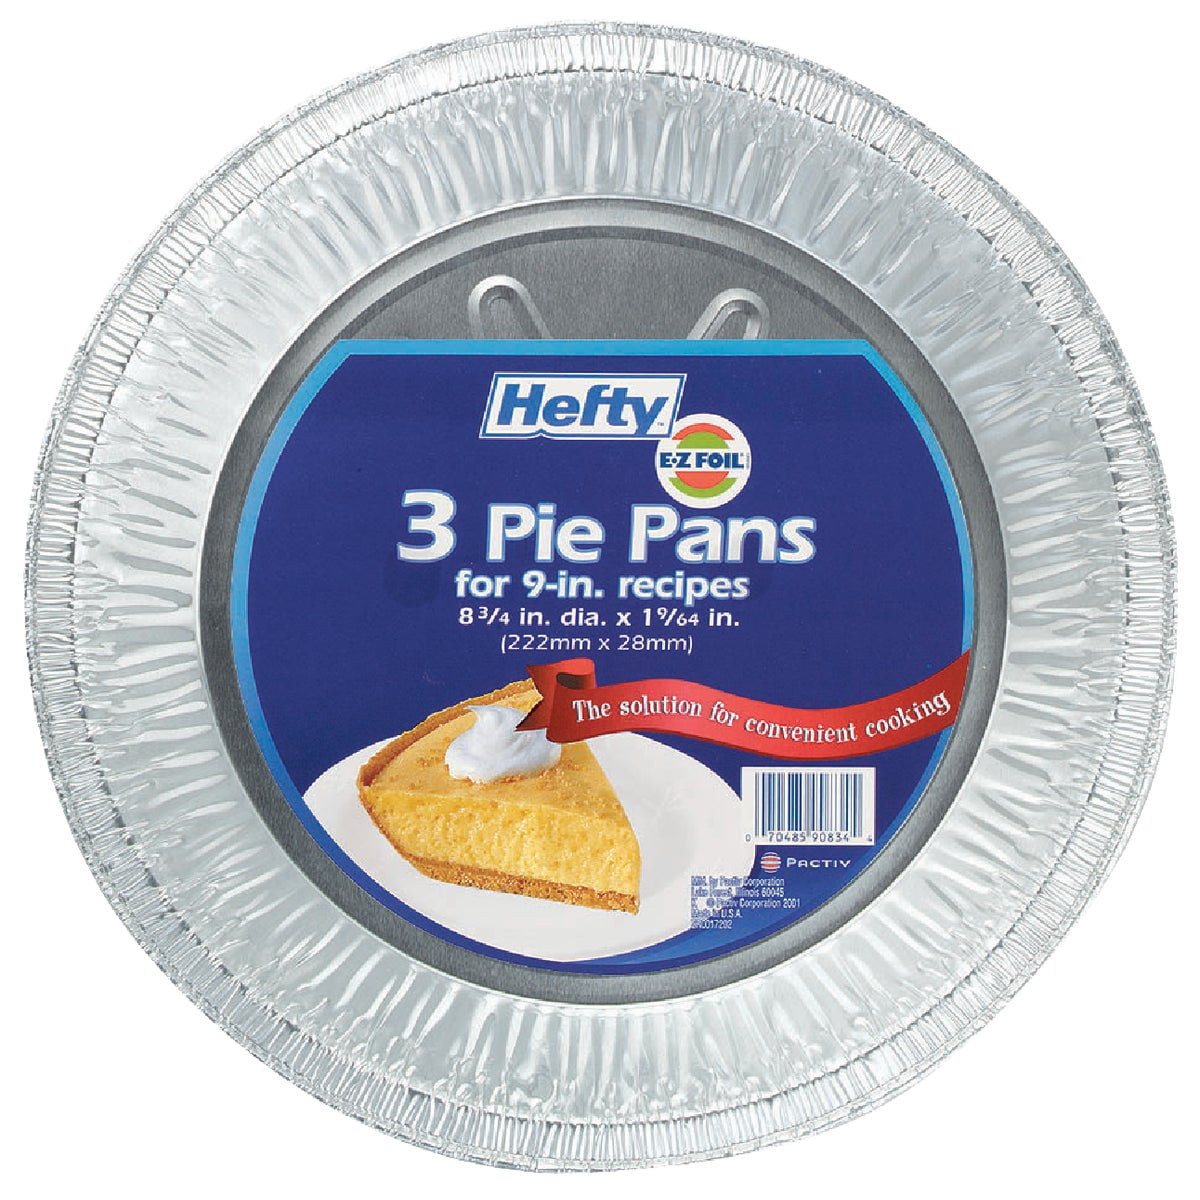 Hefty Ez Foil 9" Pie Pans, 3 Count